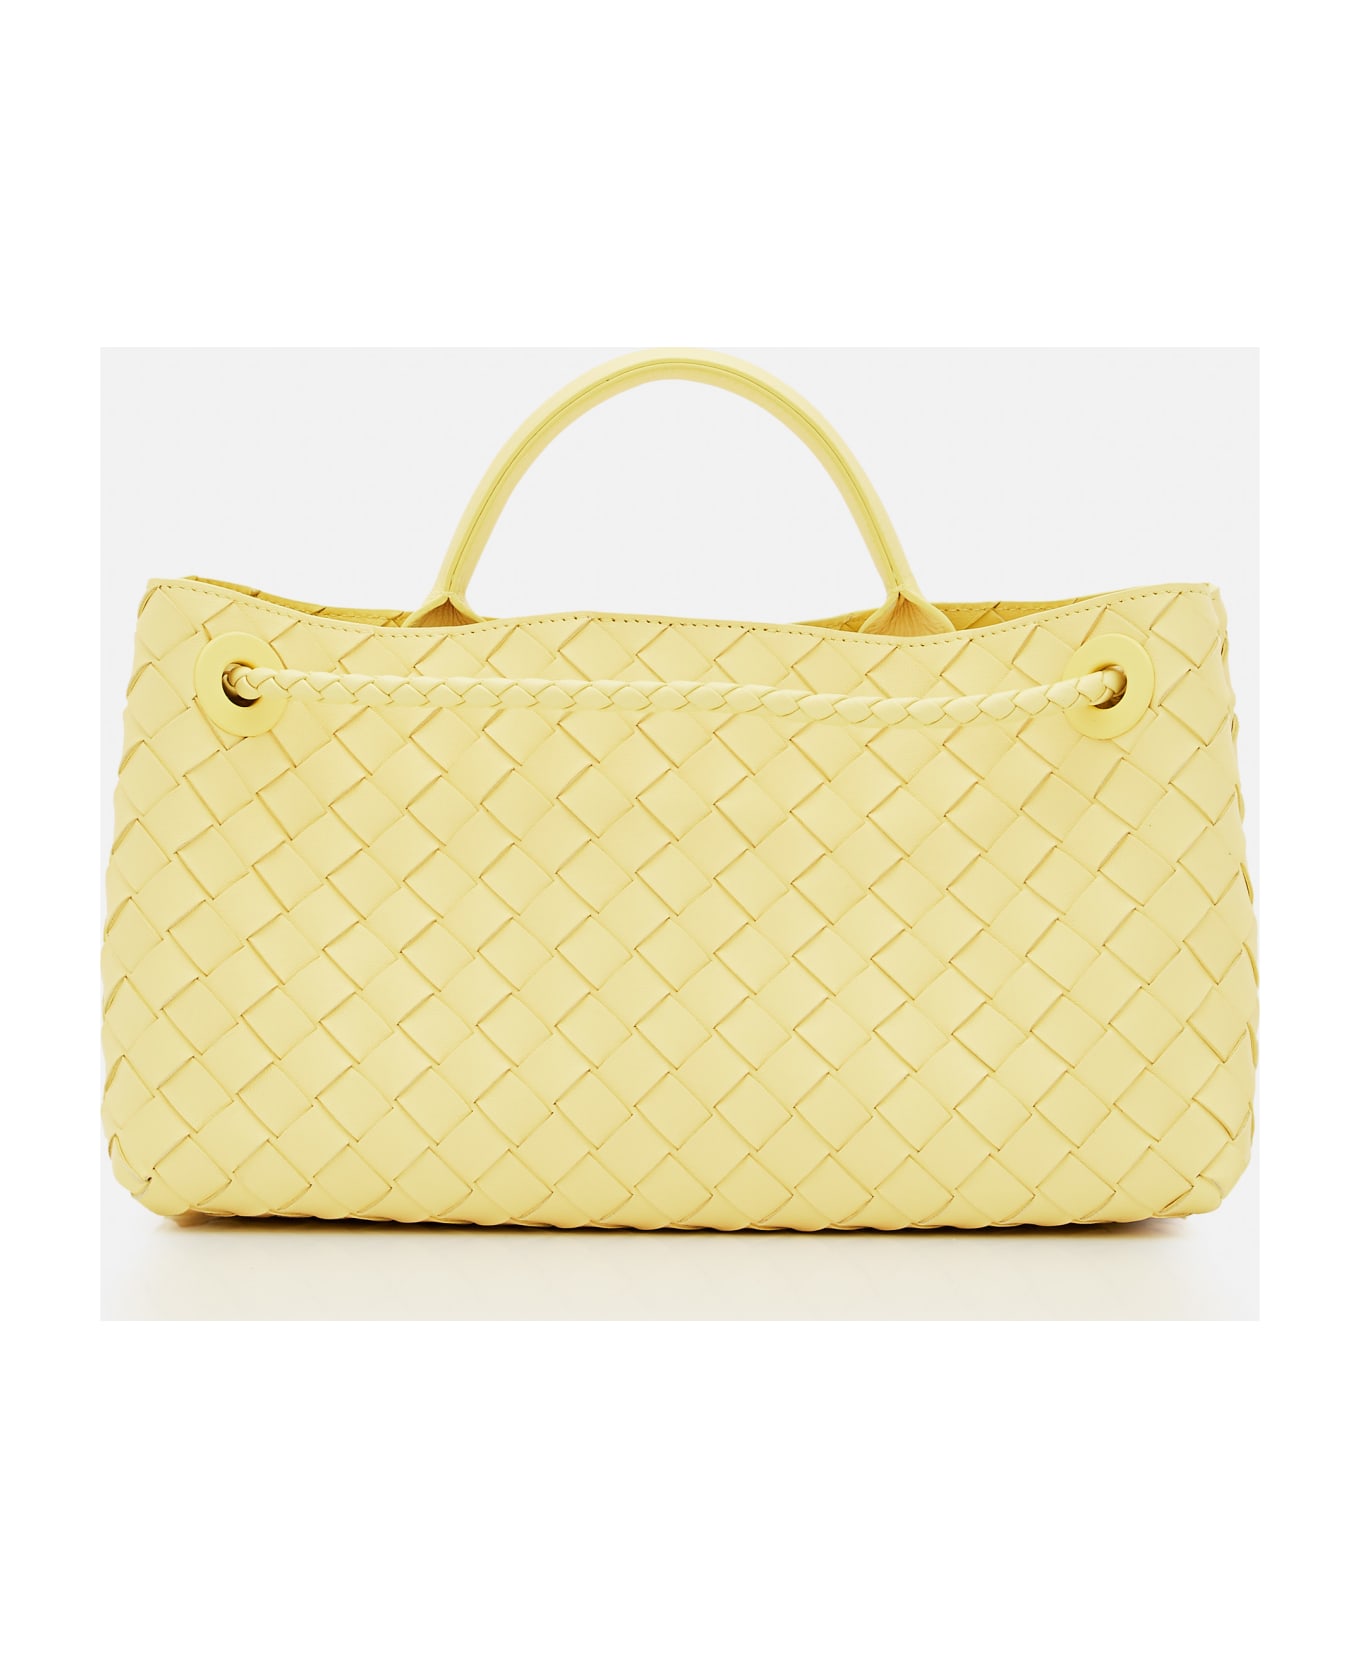 Bottega Veneta East West Andiamo Leather Handbag - Yellow